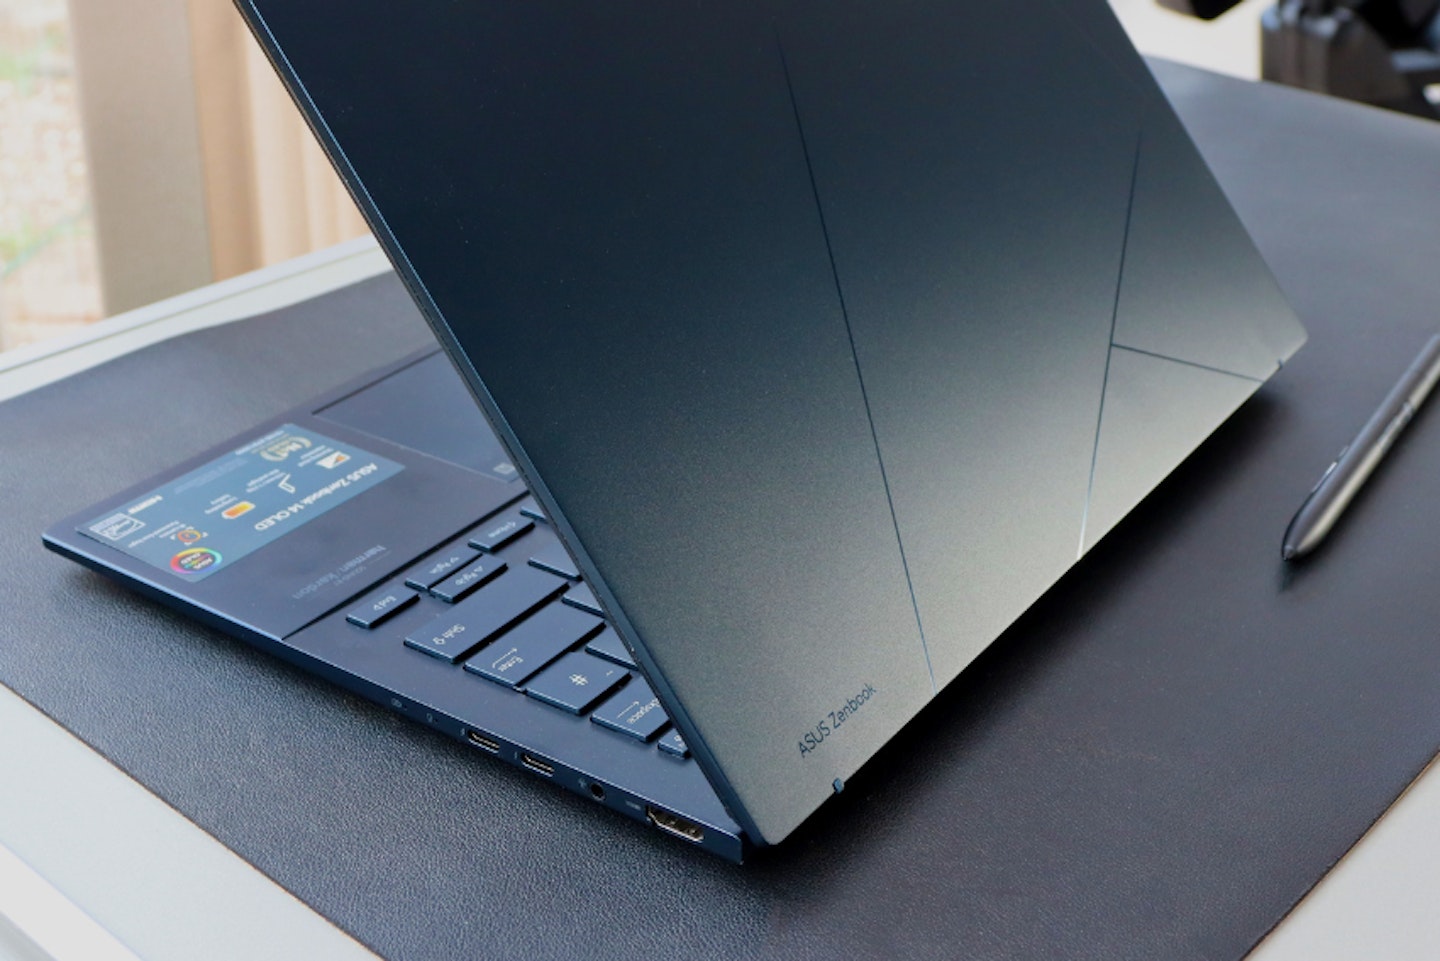 ASUS Zenbook 14-inch laptop